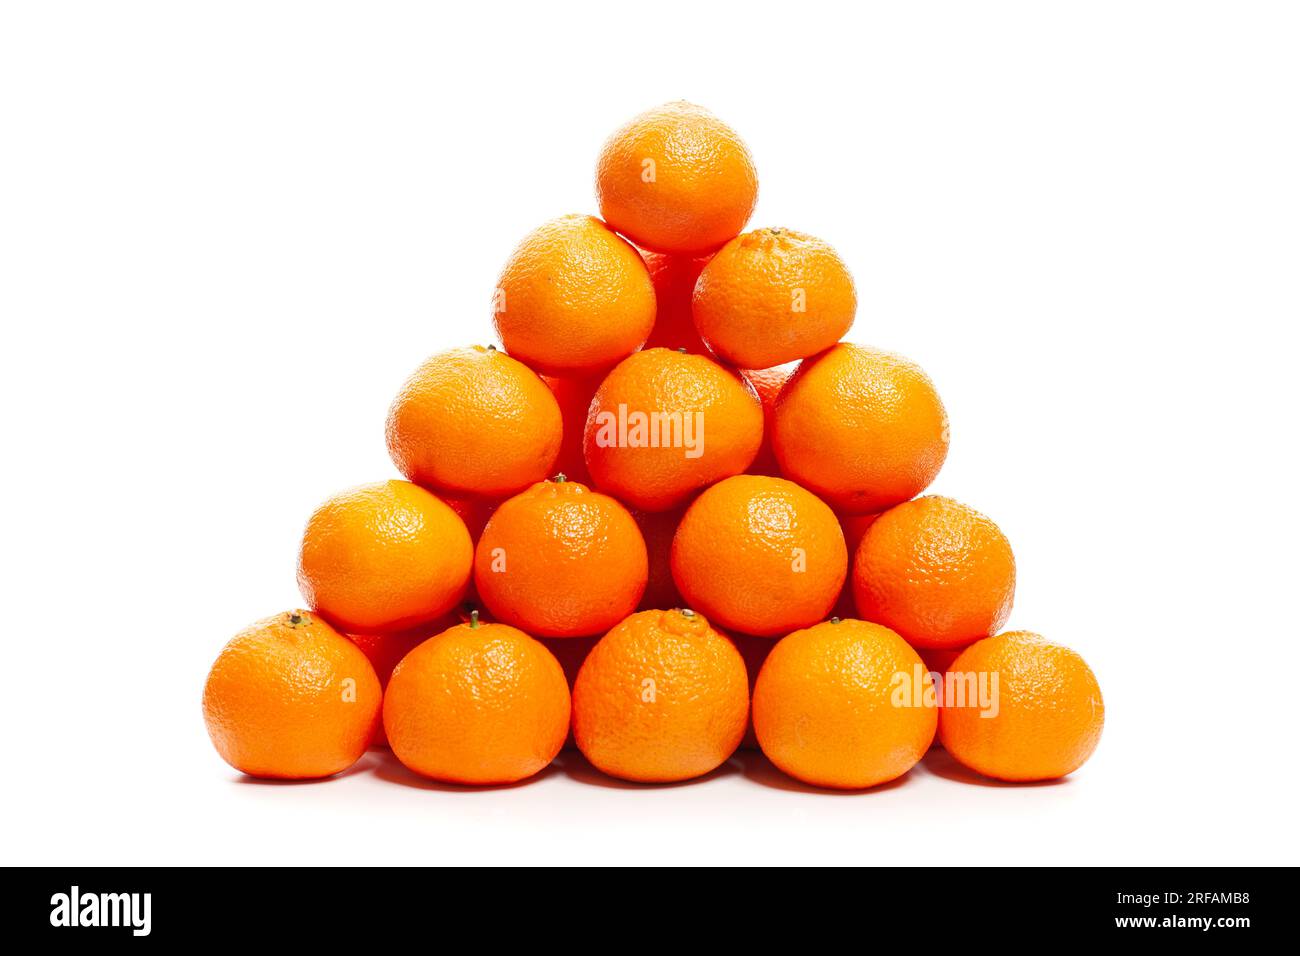 Bright Orange tangerines fruits isolated on white background Stock Photo